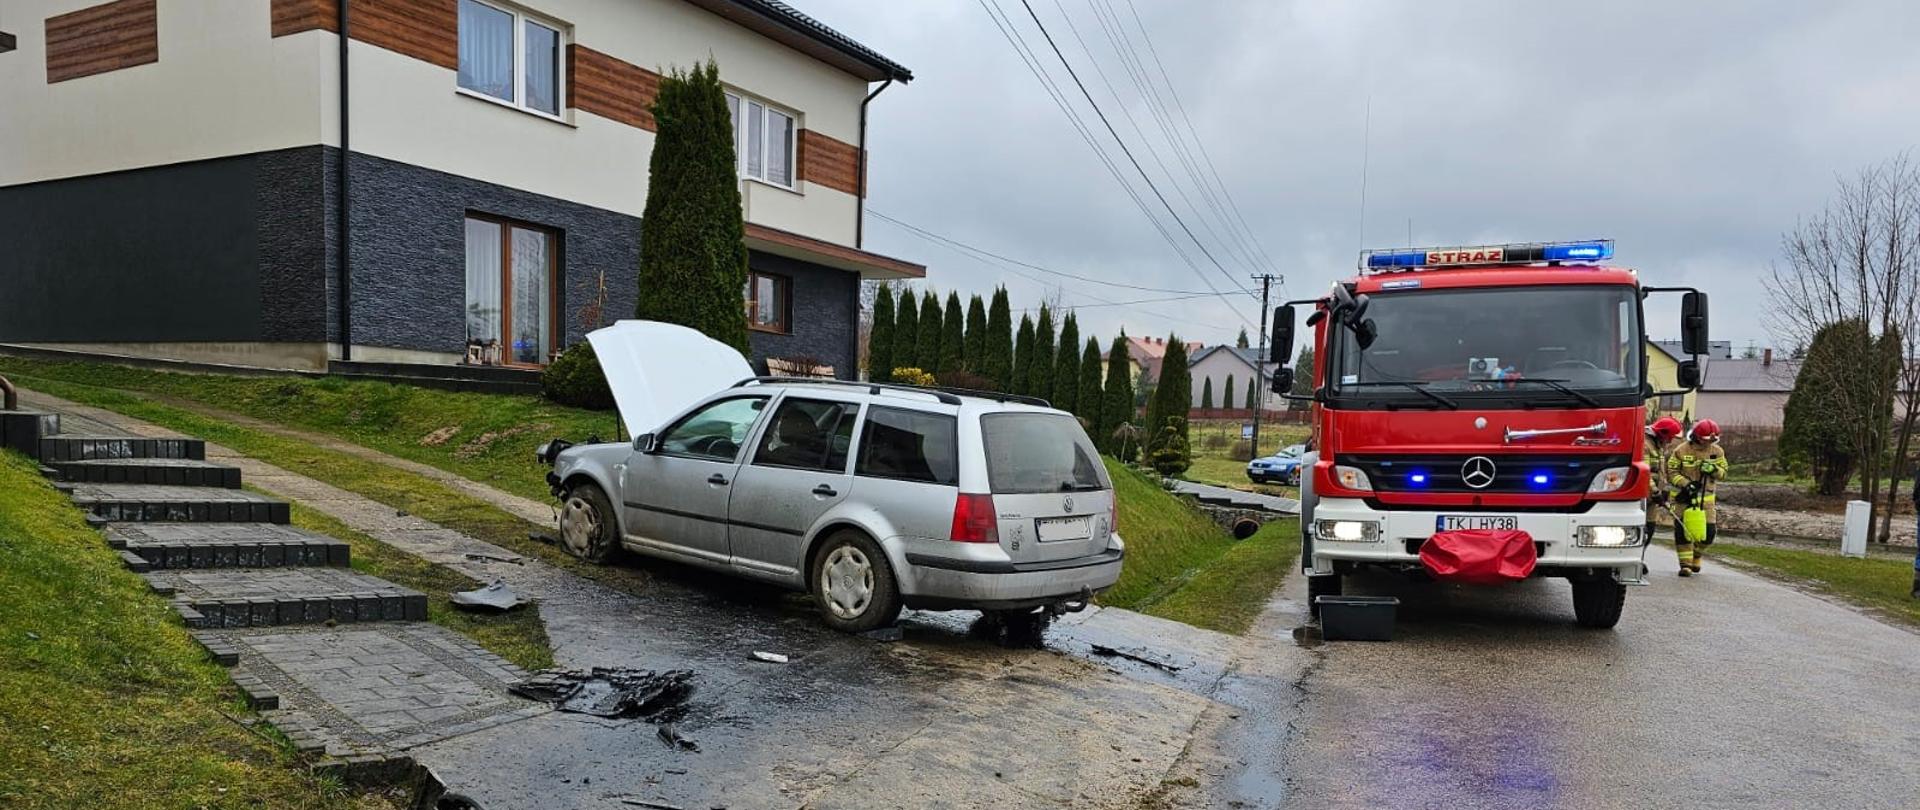 Na zdjęciu pokazano samochód po uderzeniu w przepust drogowy stojący z otwartą klapą silnika na podjeździe do budynku. Na ulicy stoi samochód pożarniczy, a przy nim strażacy.